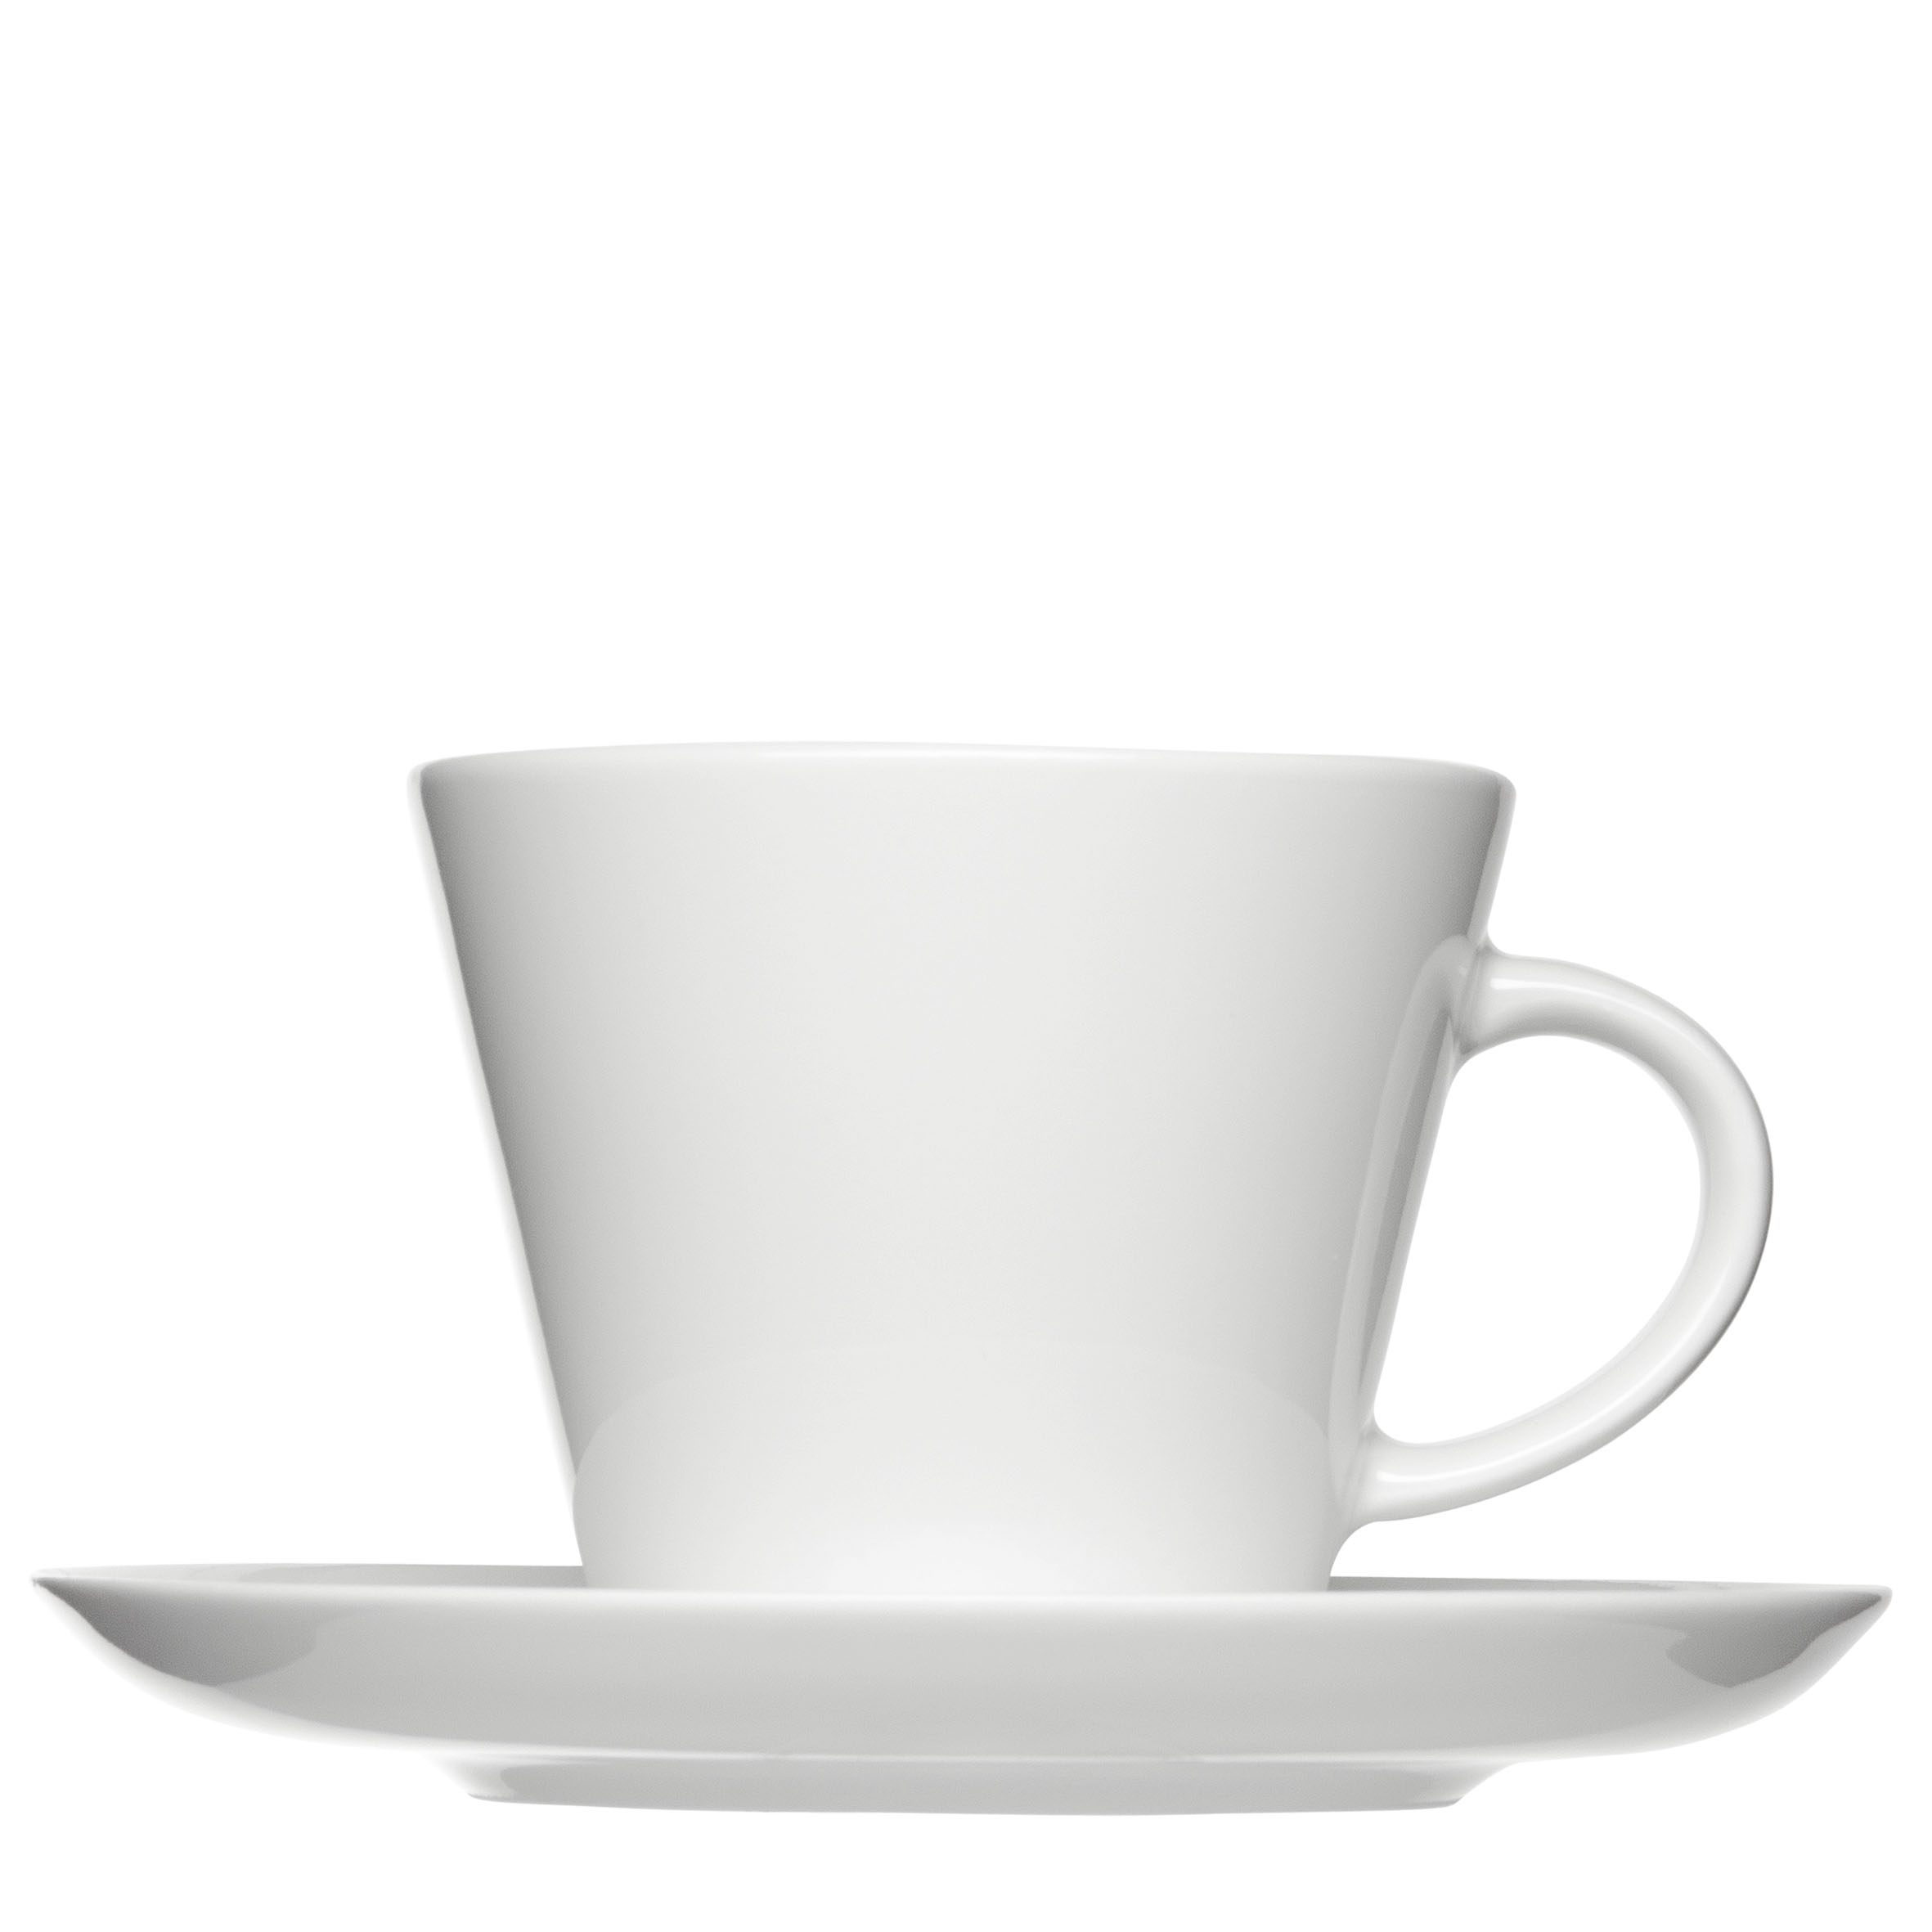 Kaffeetasse Form 541